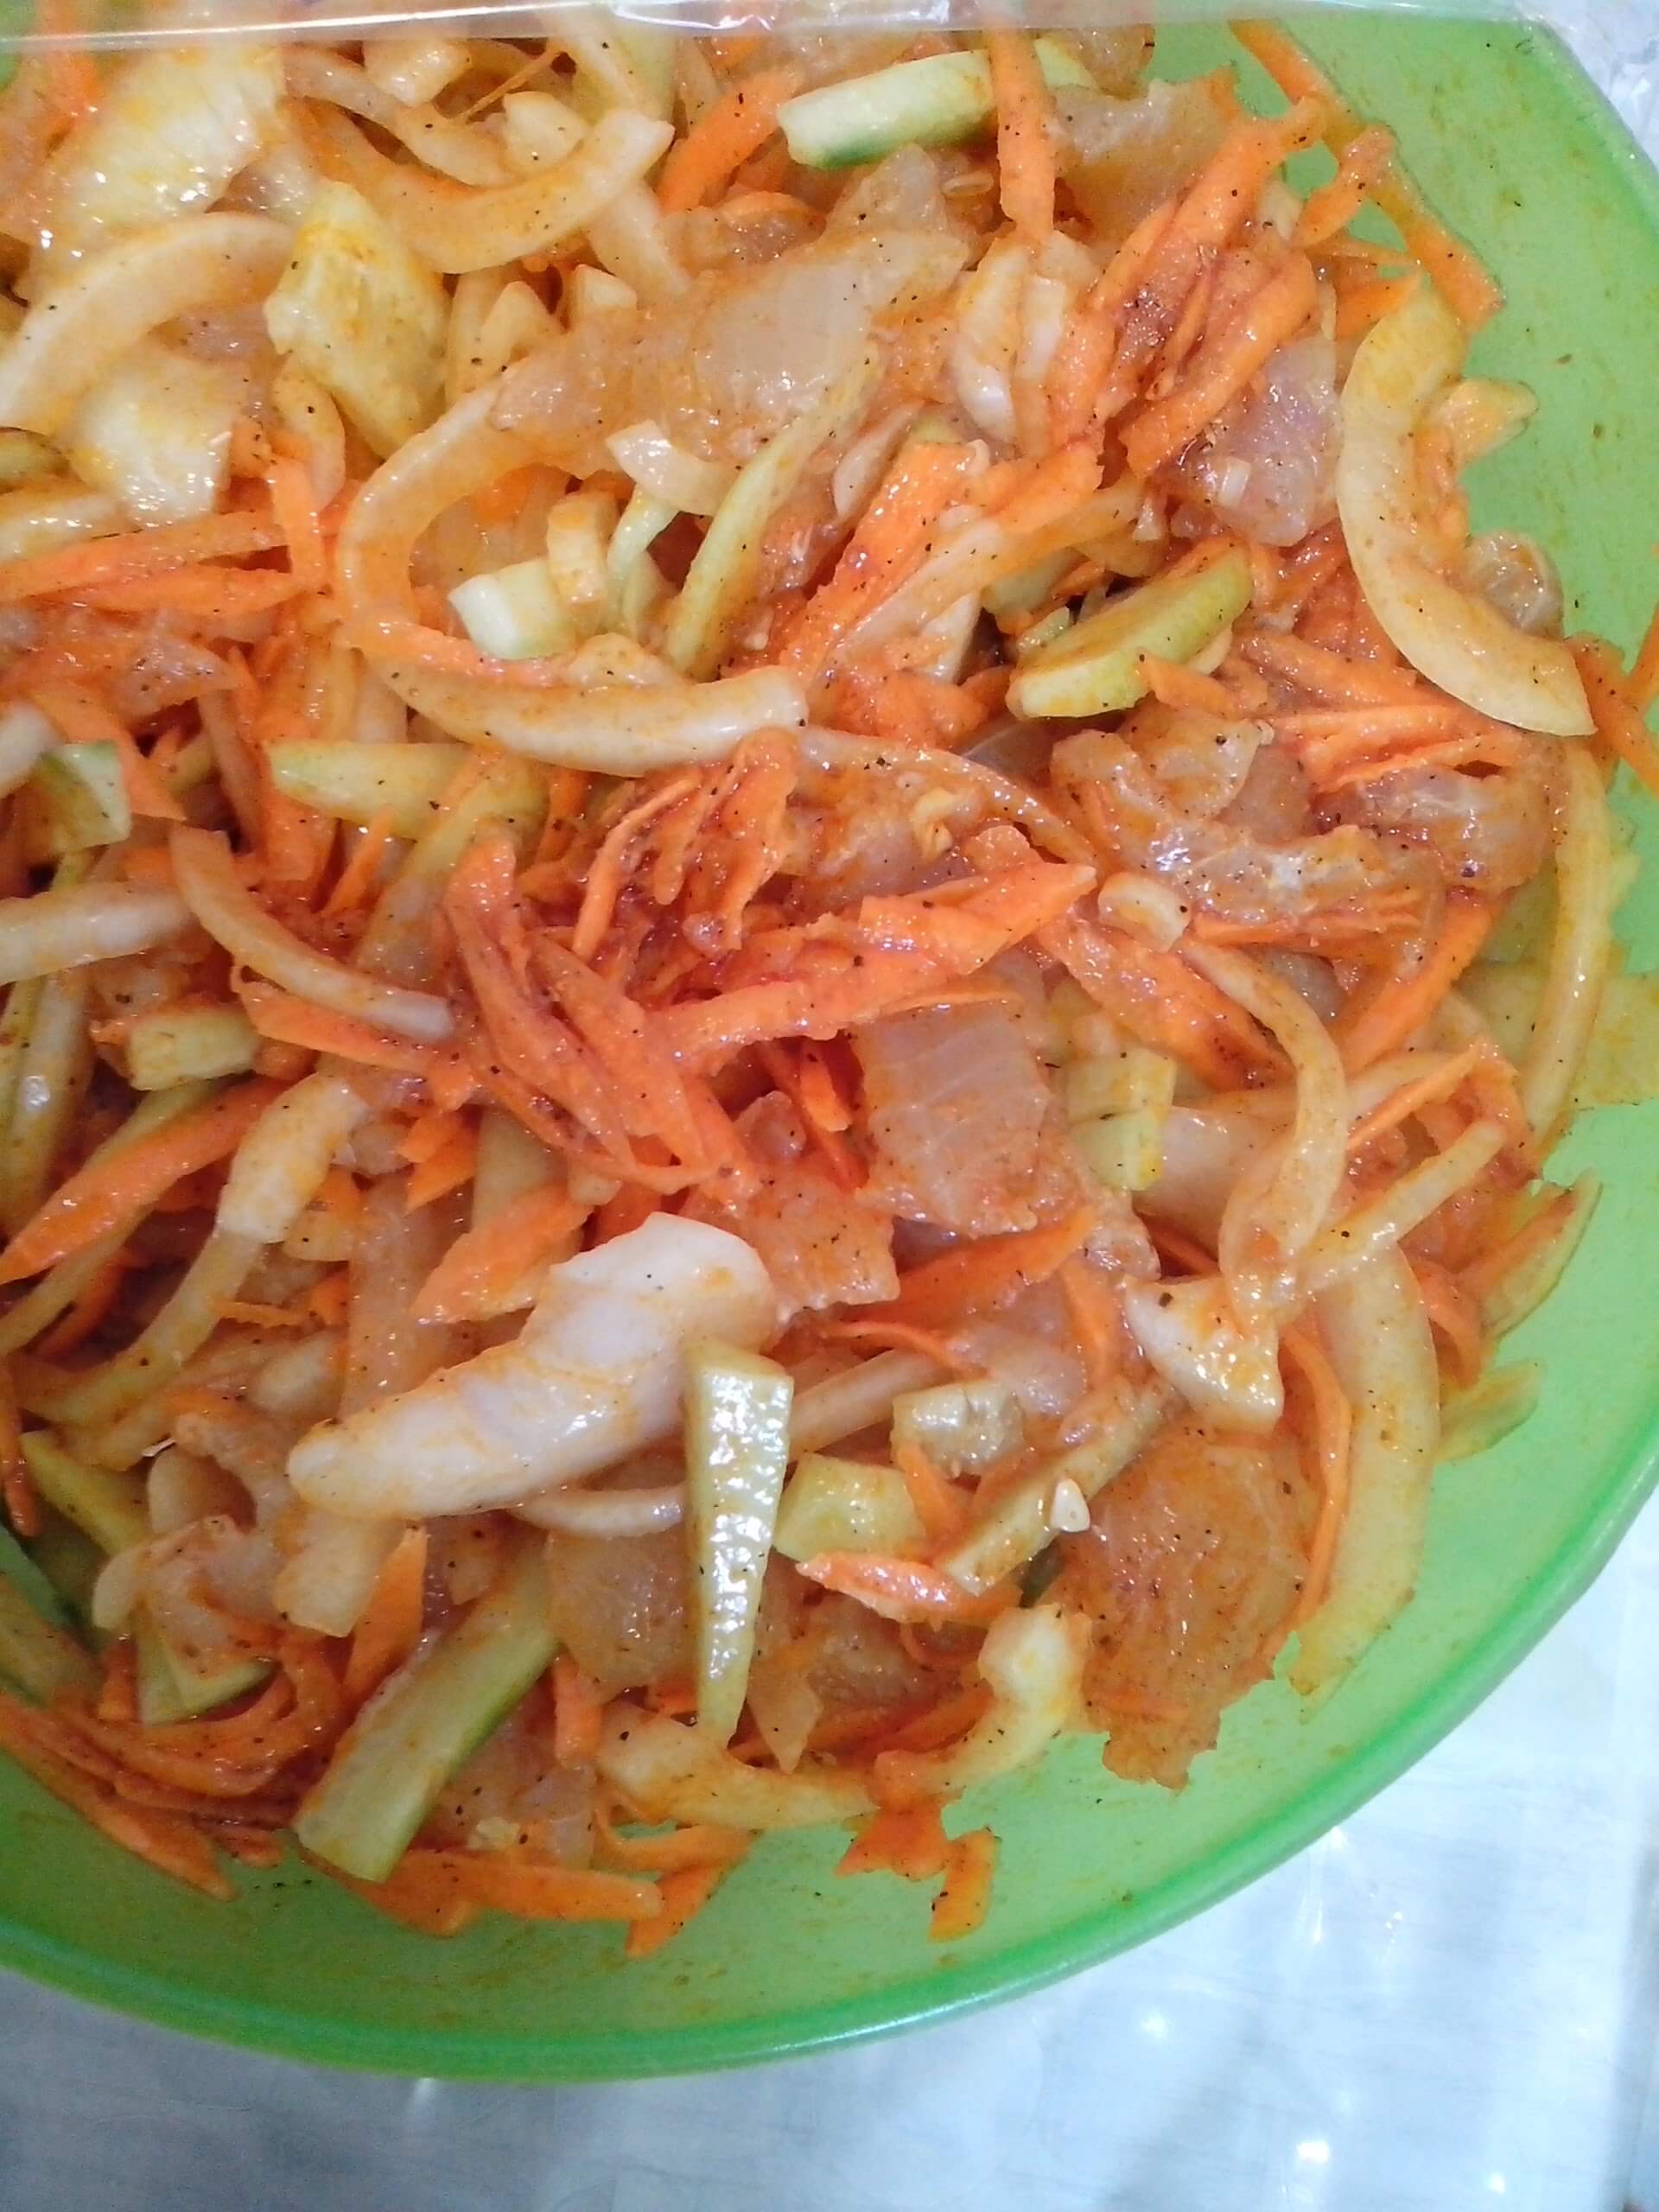 Как приготовить хе из рыбы по-корейски по пошаговому рецепту с фото